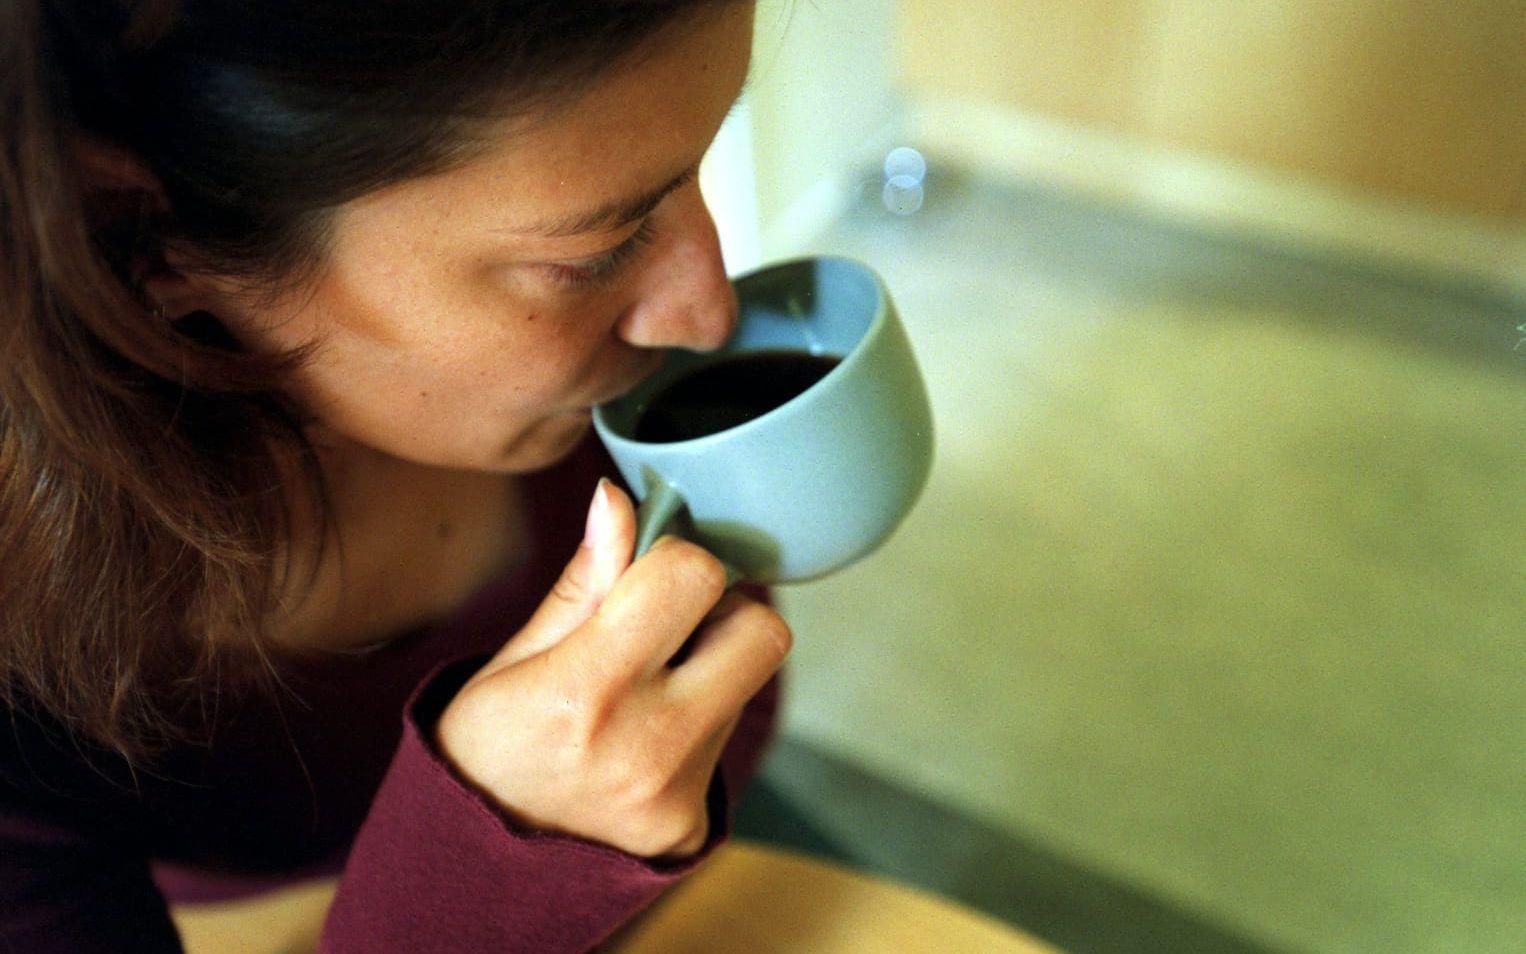 Många dricker kaffe för att motverka trötthet när de egentligen borde få mer sömn. En färsk studie visar att kaffets uppiggande effekt bara biter på nattsuddare tre dagar på raken. Efter det slutar kroppen reagera på koffeinet och det enda som fungerar är att ta igen den förlorade sömnen.